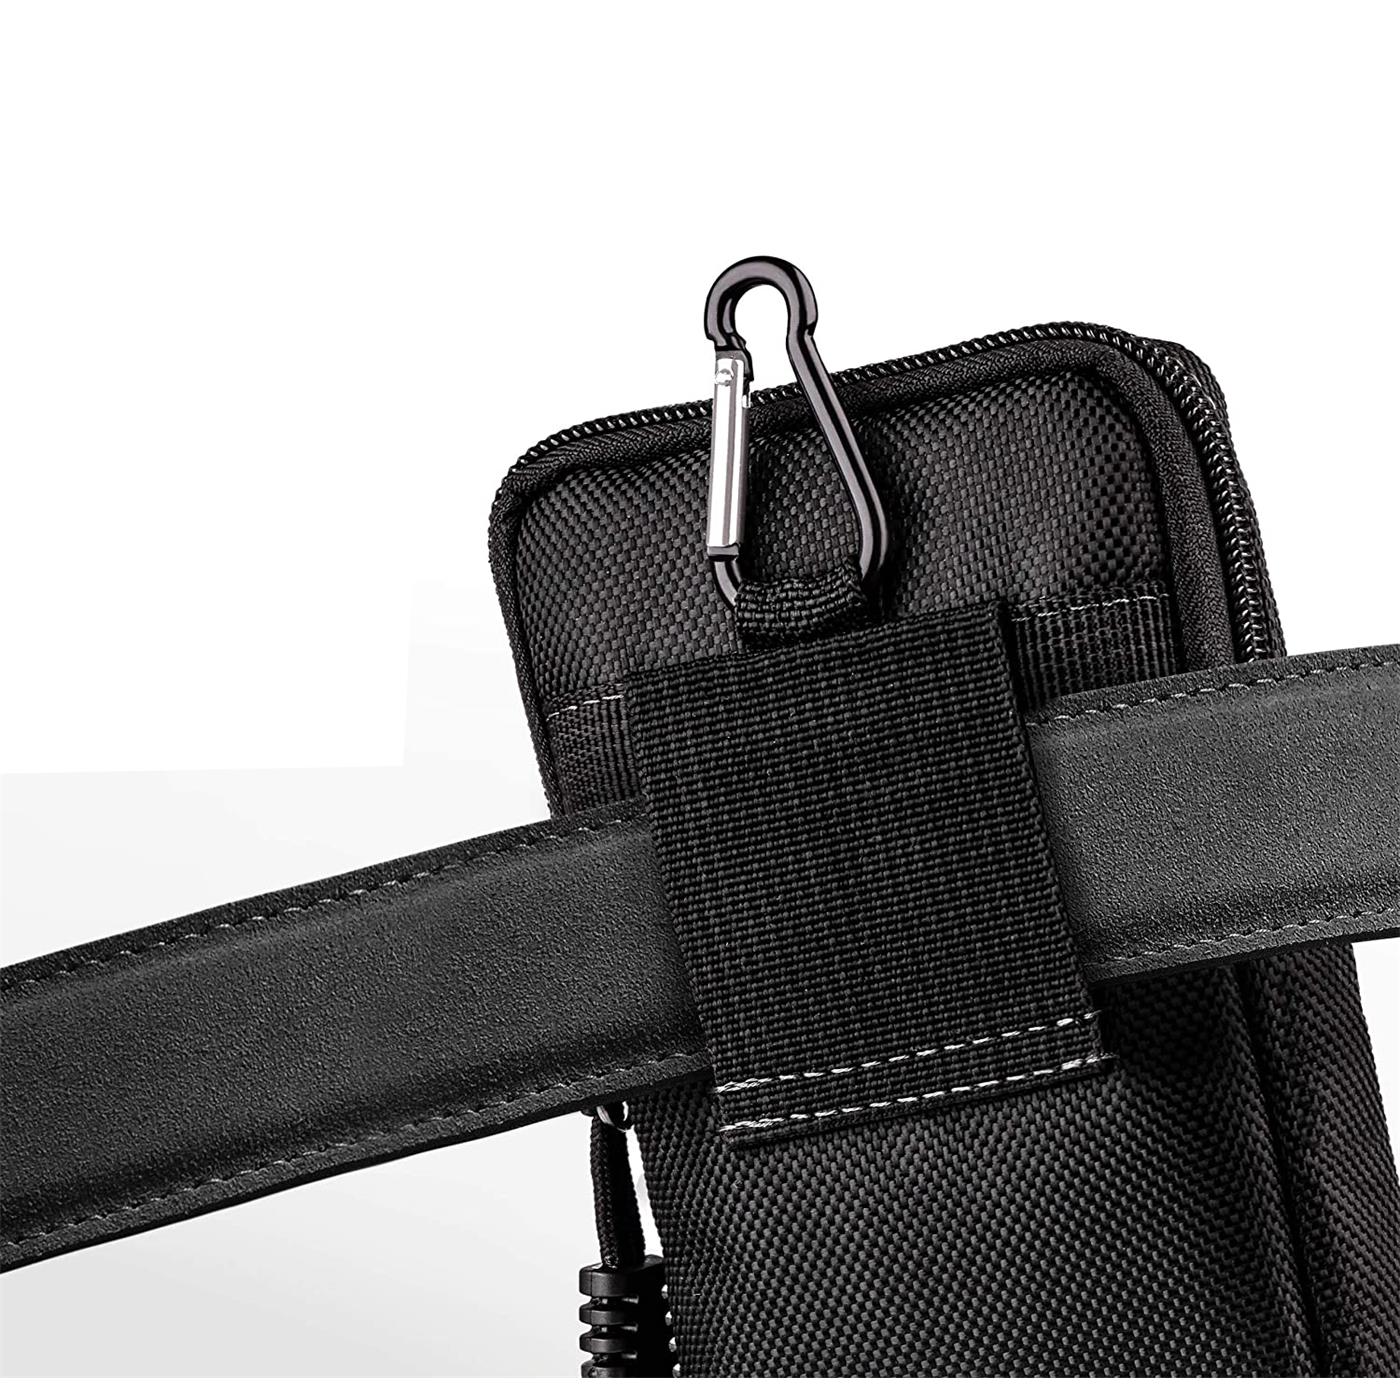 Indexbild 8 - Gürtel Tasche Für Xiaomi Modelle Handy Hülle Schutzhülle Case Clip Etui Nylon